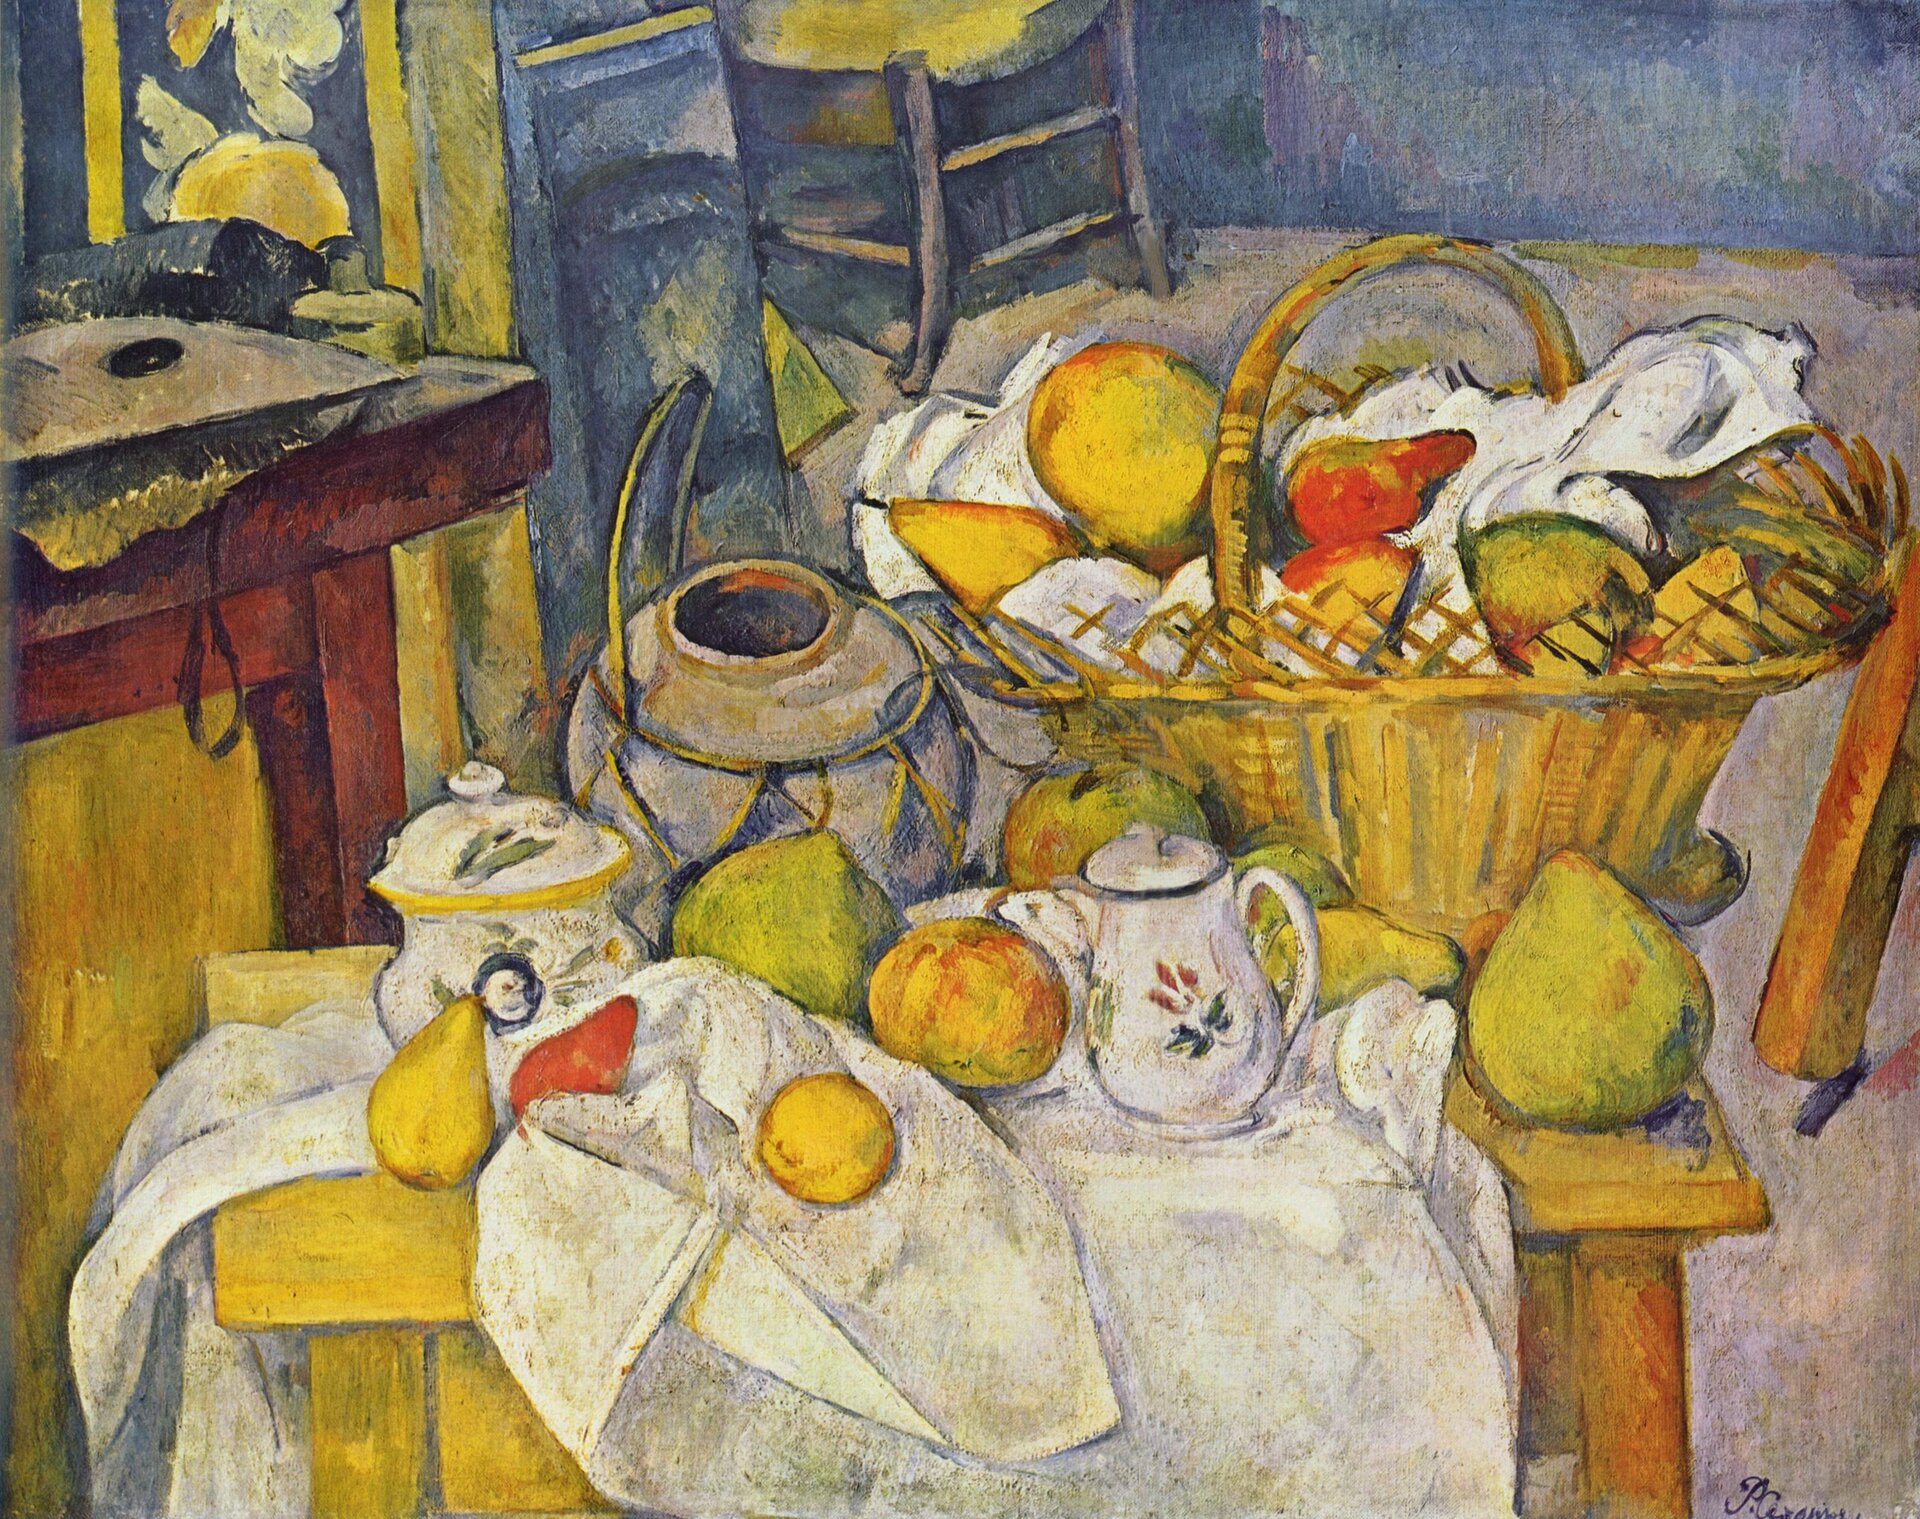 Ilustracja o kształcie poziomego prostokąta przedstawia obraz Paula Cézanne’a „Martwa natura z kuchennym stołem” Ukazuje żółty, drewniany stół nakryty niedbale białym, udrapowanym obrusem. Ujętą nieco z góry martwą naturę tworzą: wielki wiklinowy kosz wypełniony  owocami,  naczynia kuchenne  oraz porozrzucane różne owoce. Po lewej stronie znajduje się brązowy stolik, a w dali krzesła. Ściana w tle jest w kolorze niebiesko-fioletowym. 